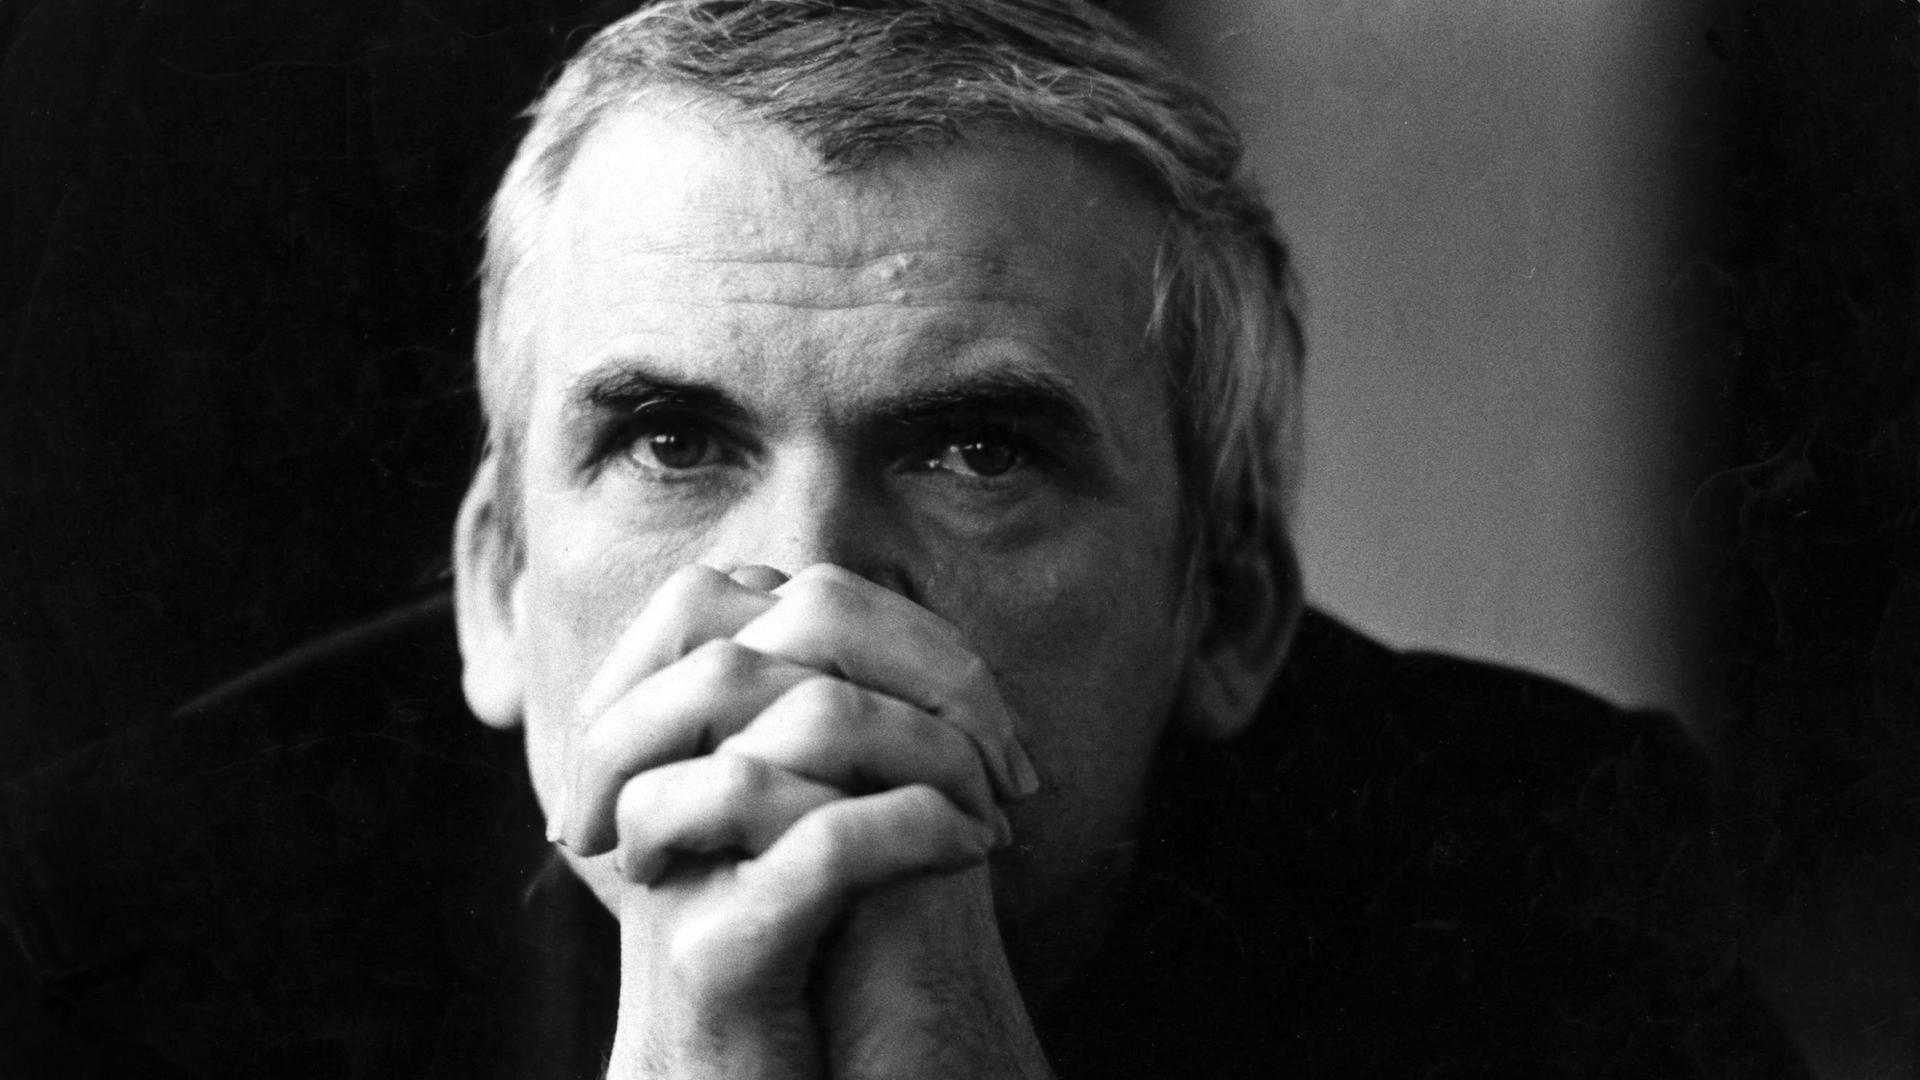 Der tschechische Schriftsteller Milan Kundera schaut über seine gefalteten Hände in die Kamera. Die Schwarz-Weiß-Aufnahme stammt aus dem Jahr 1981.